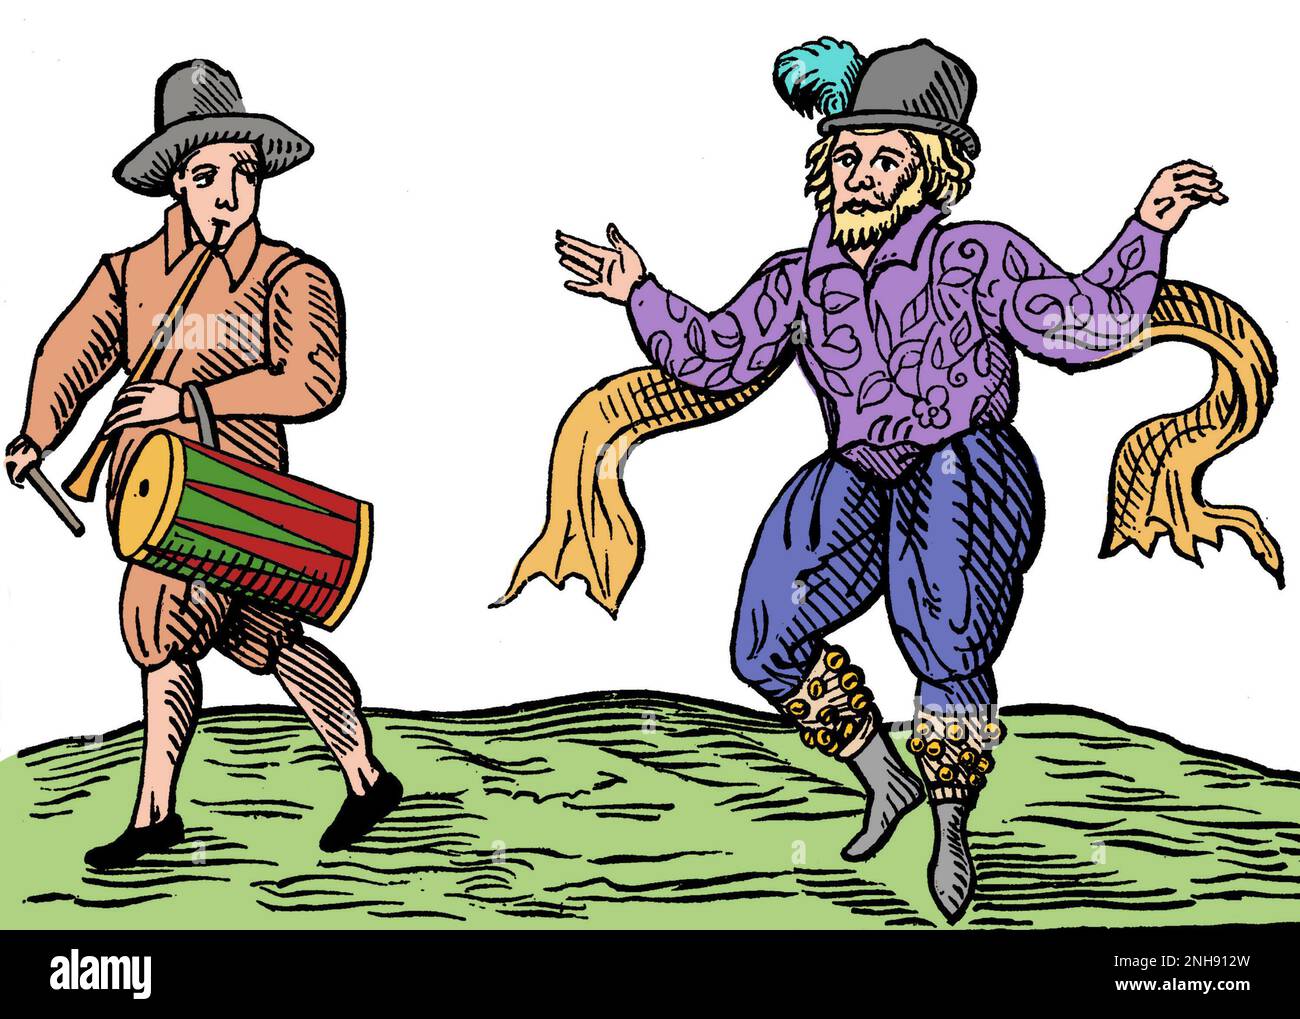 William Kempe (ca. 1560-1603), gemeinhin als will Kemp bezeichnet, war ein englischer Schauspieler und Tänzer, der sich auf Comic-Rollen spezialisiert hat und bekannt ist als einer der ursprünglichen Spieler in den frühen Dramen von William Shakespeare. Nach seinem Ausscheiden aus den Chamberlain's Men setzte Kemp seine Karriere als Künstler fort. Im Februar und März 1600 nahm er das, was er später "neun Tage Wunder" nennen würde, in dem morris von London nach Norwich tanzte und später eine Beschreibung des Ereignisses veröffentlichte, in der diese Gravur (1600) erscheint. Gefärbt. Stockfoto